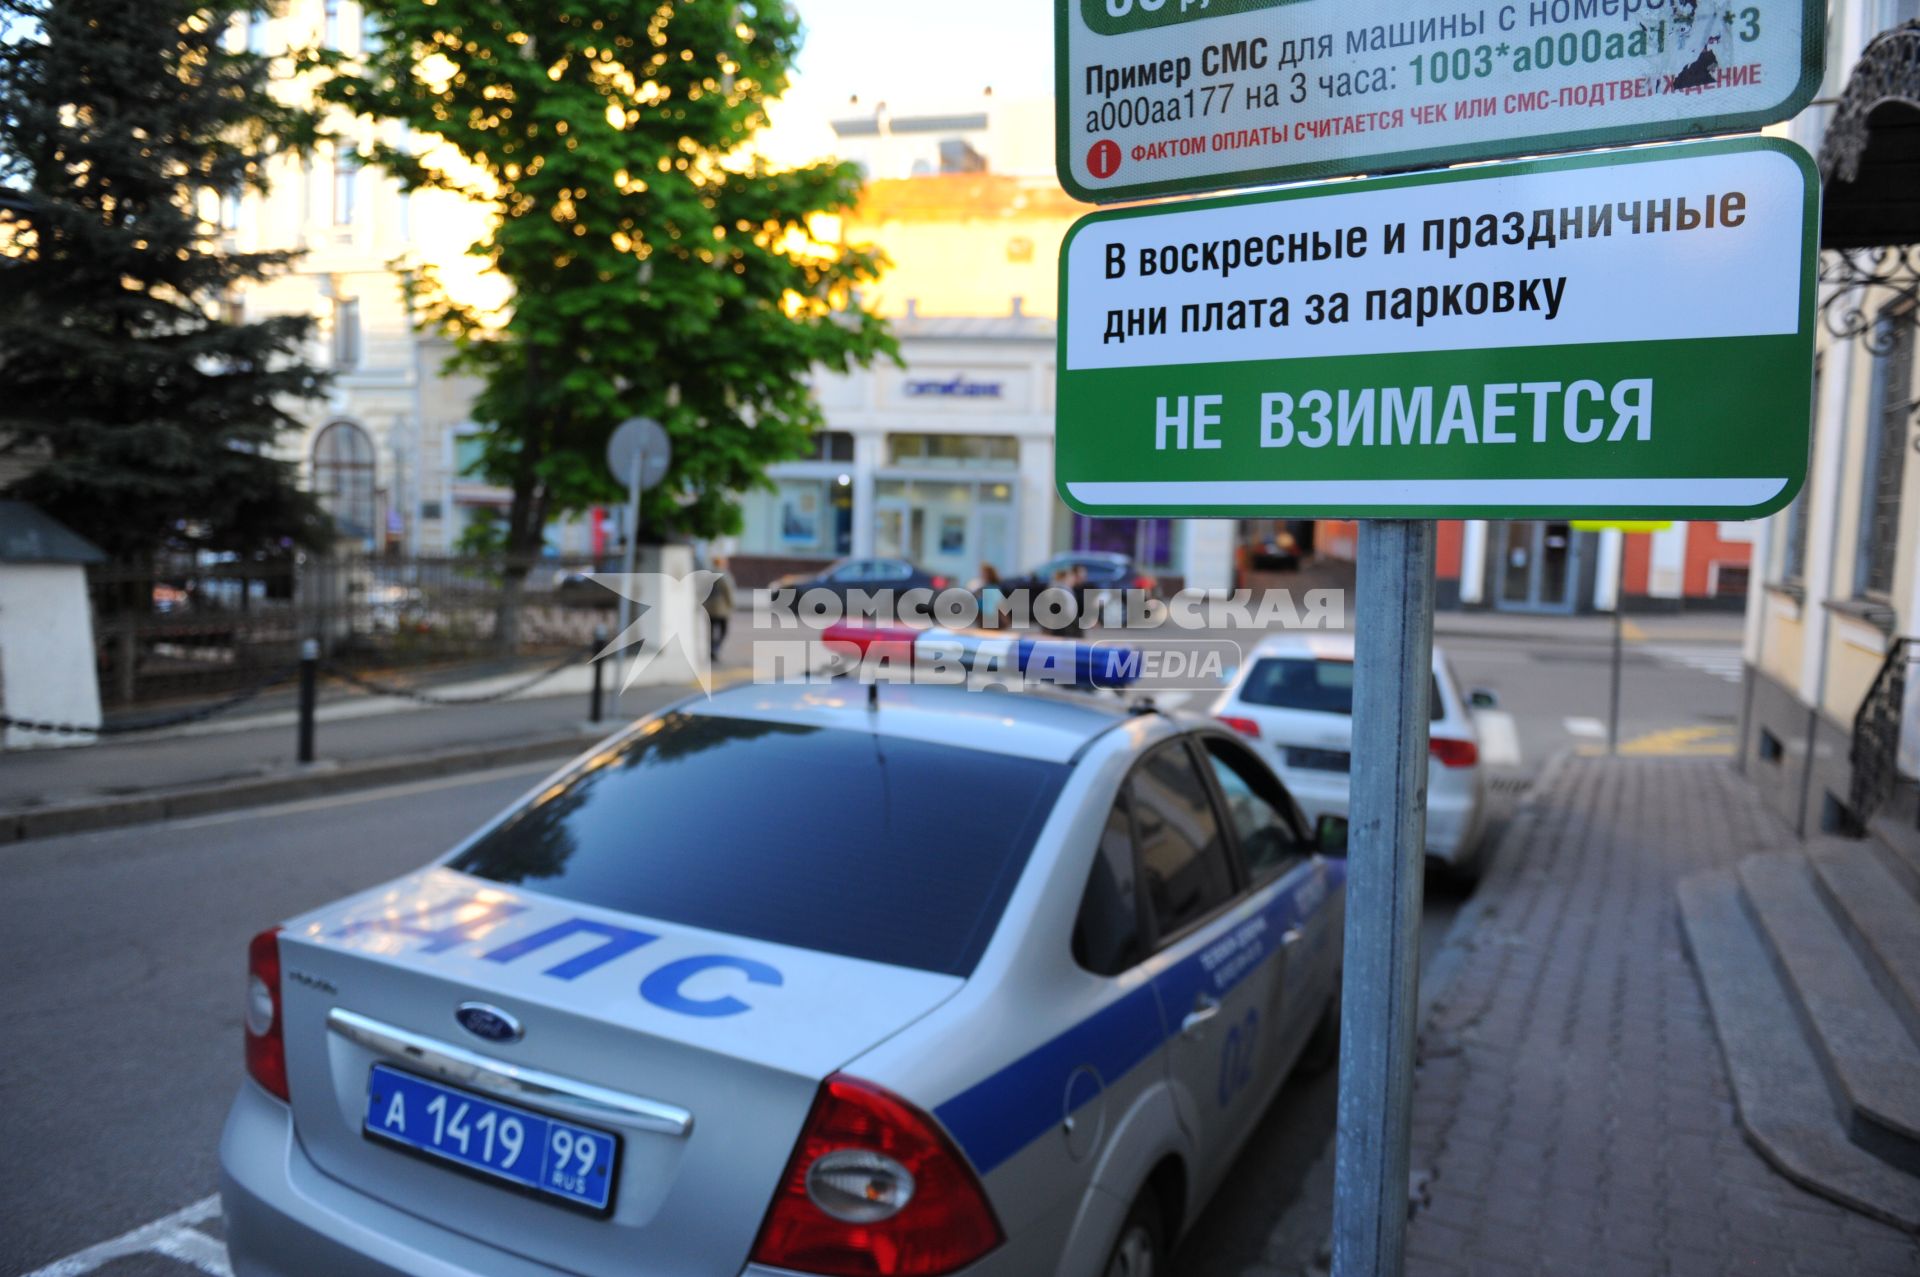 Парковка. На снимке: табличка с надписью `В воскресенье и праздничные дни плата за парковку не взимается`